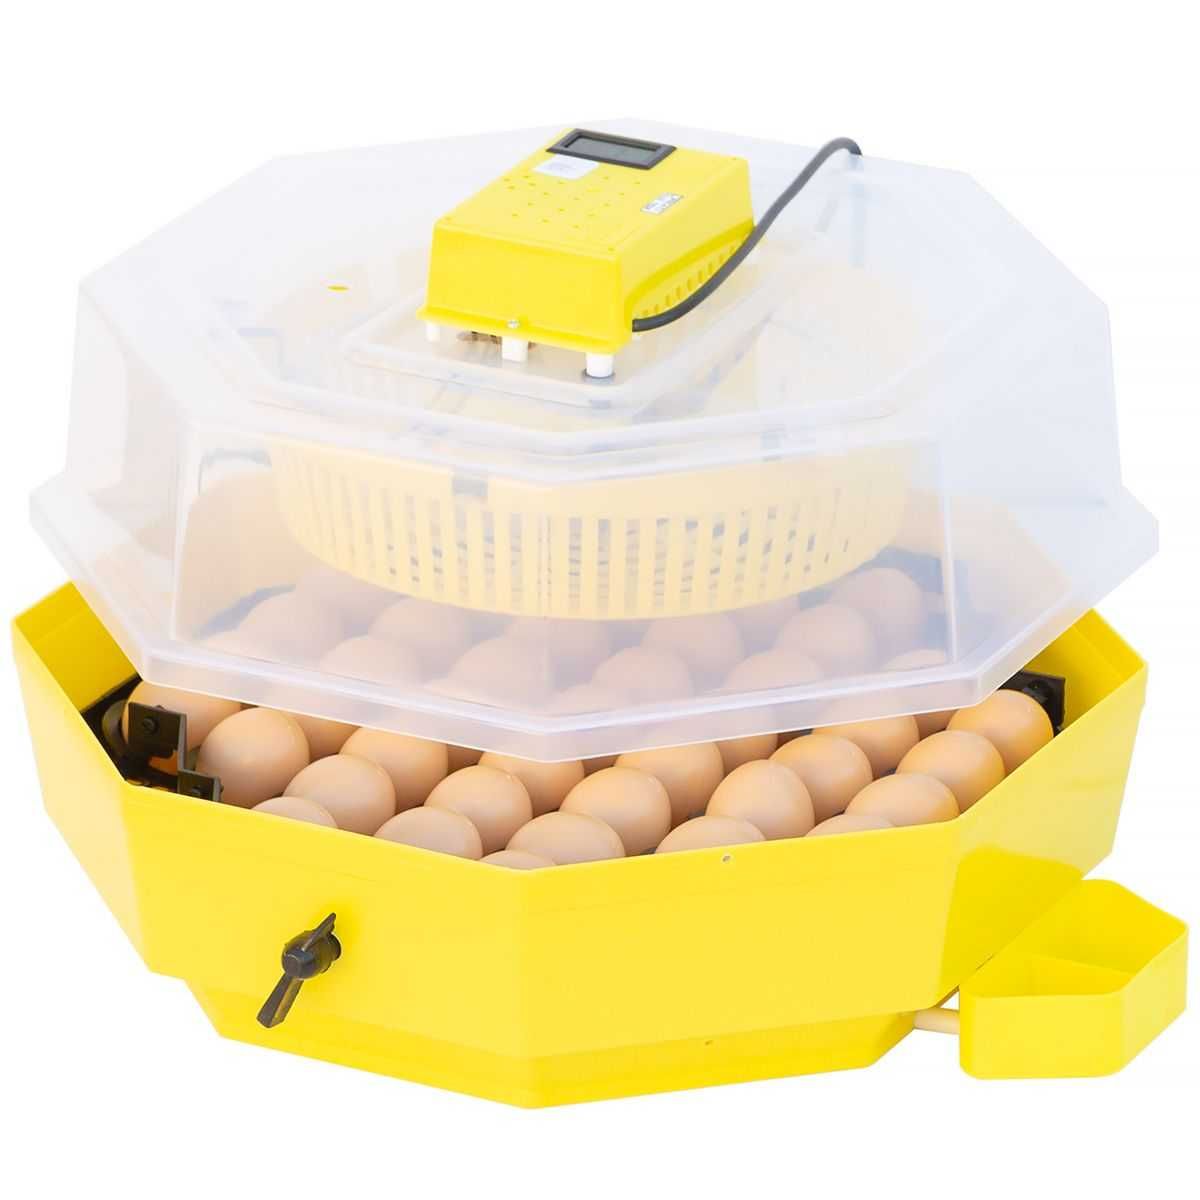 Inkubator lęgowy iBator HOME 60 z wyświetlaczem i tacą półautomatyczną